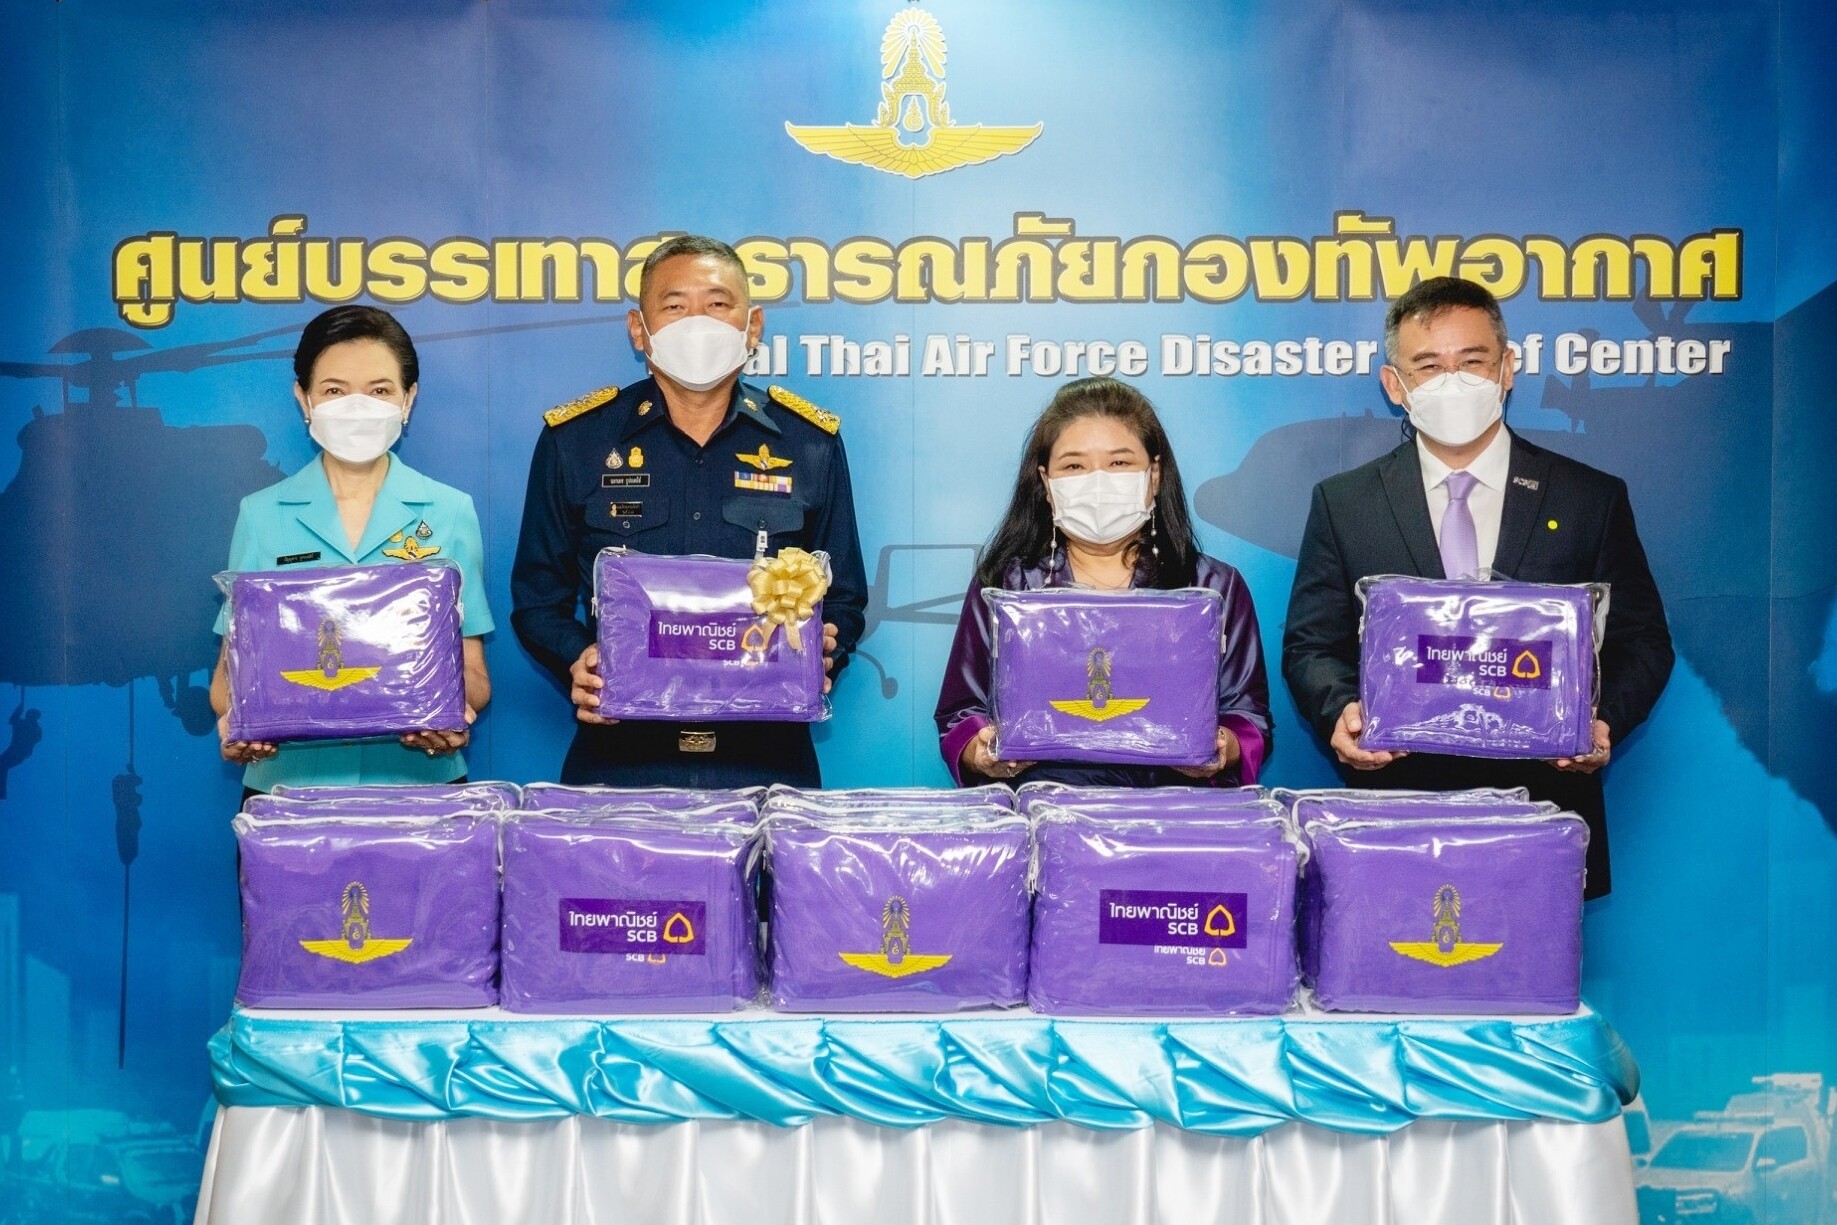 ธนาคารไทยพาณิชย์ร่วมกับกองทัพอากาศช่วยเหลือบรรเทาทุกข์ผู้ประสบภัยหนาว